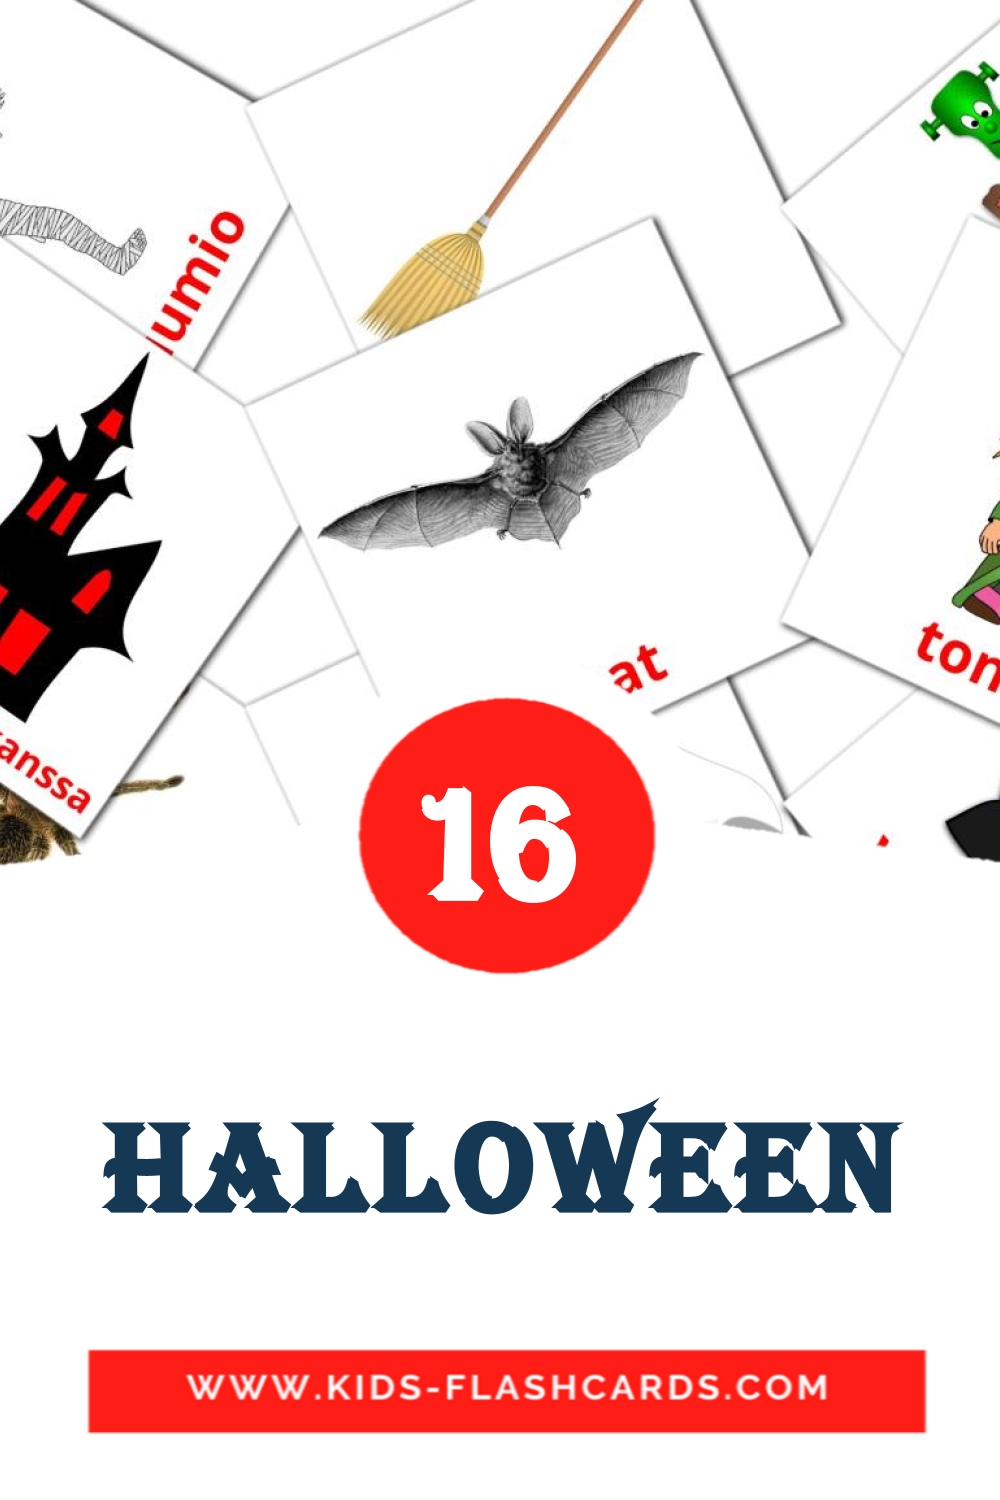 16 tarjetas didacticas de Halloween para el jardín de infancia en finlandés